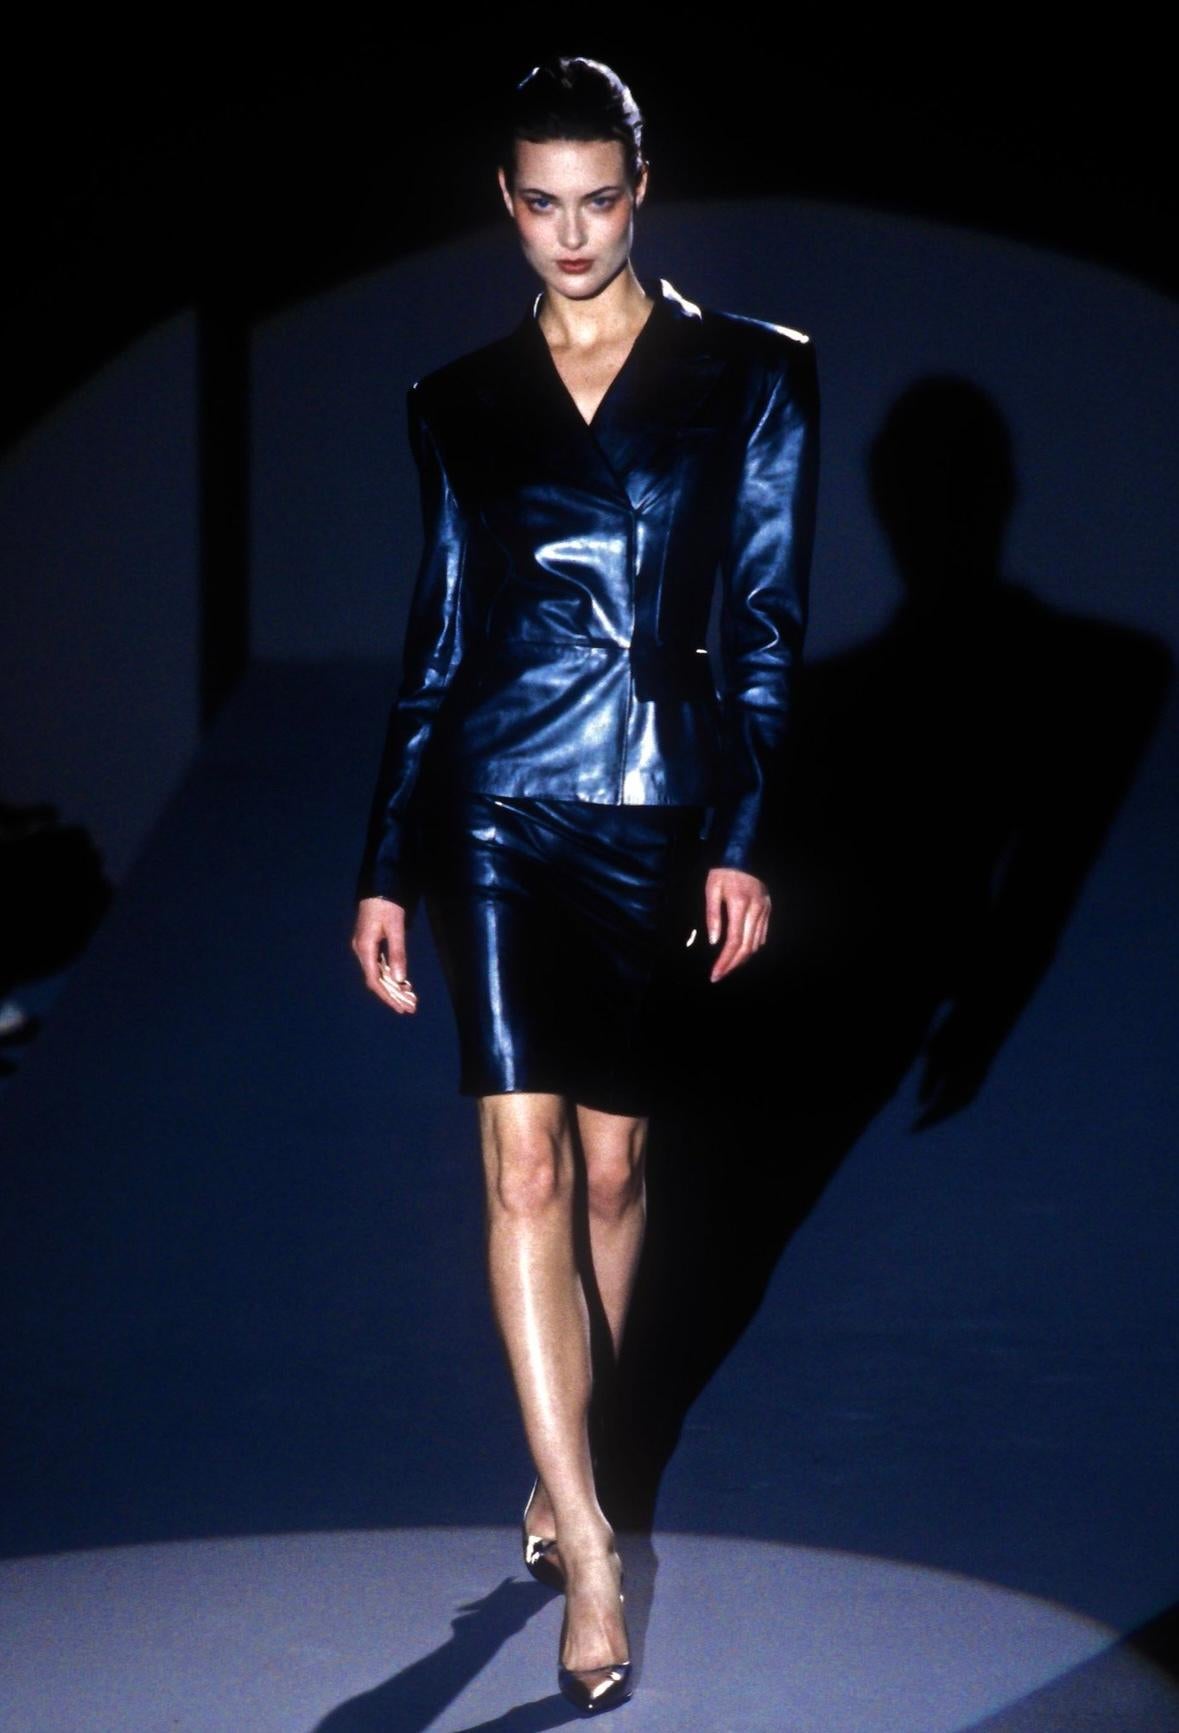 Présentation d'une fabuleuse veste Gucci en cuir noir métallisé, conçue par Tom Ford. Issue de la collection automne/hiver 1997, cette superbe veste a fait ses débuts sur les podiums de la saison. Cette veste de style blazer est dotée d'une